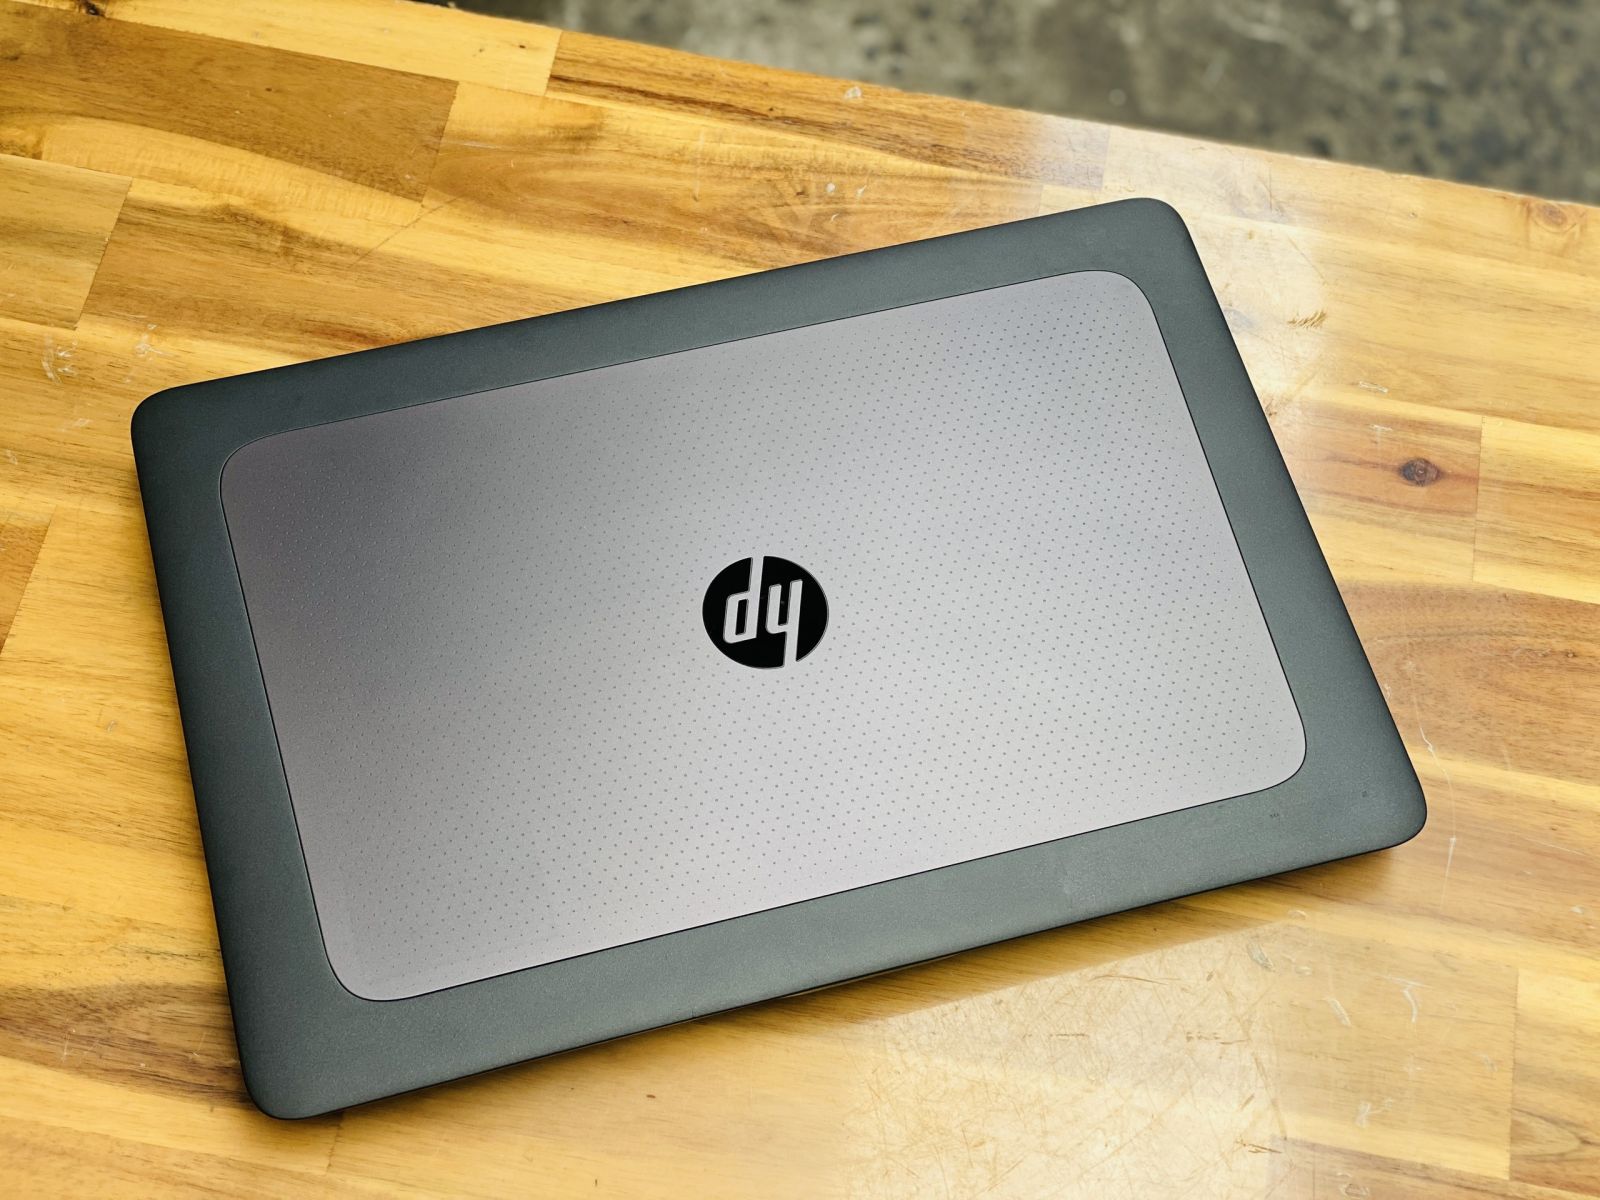 Hình ảnh HP Zbook G3 của Laptop Minh Mẫn